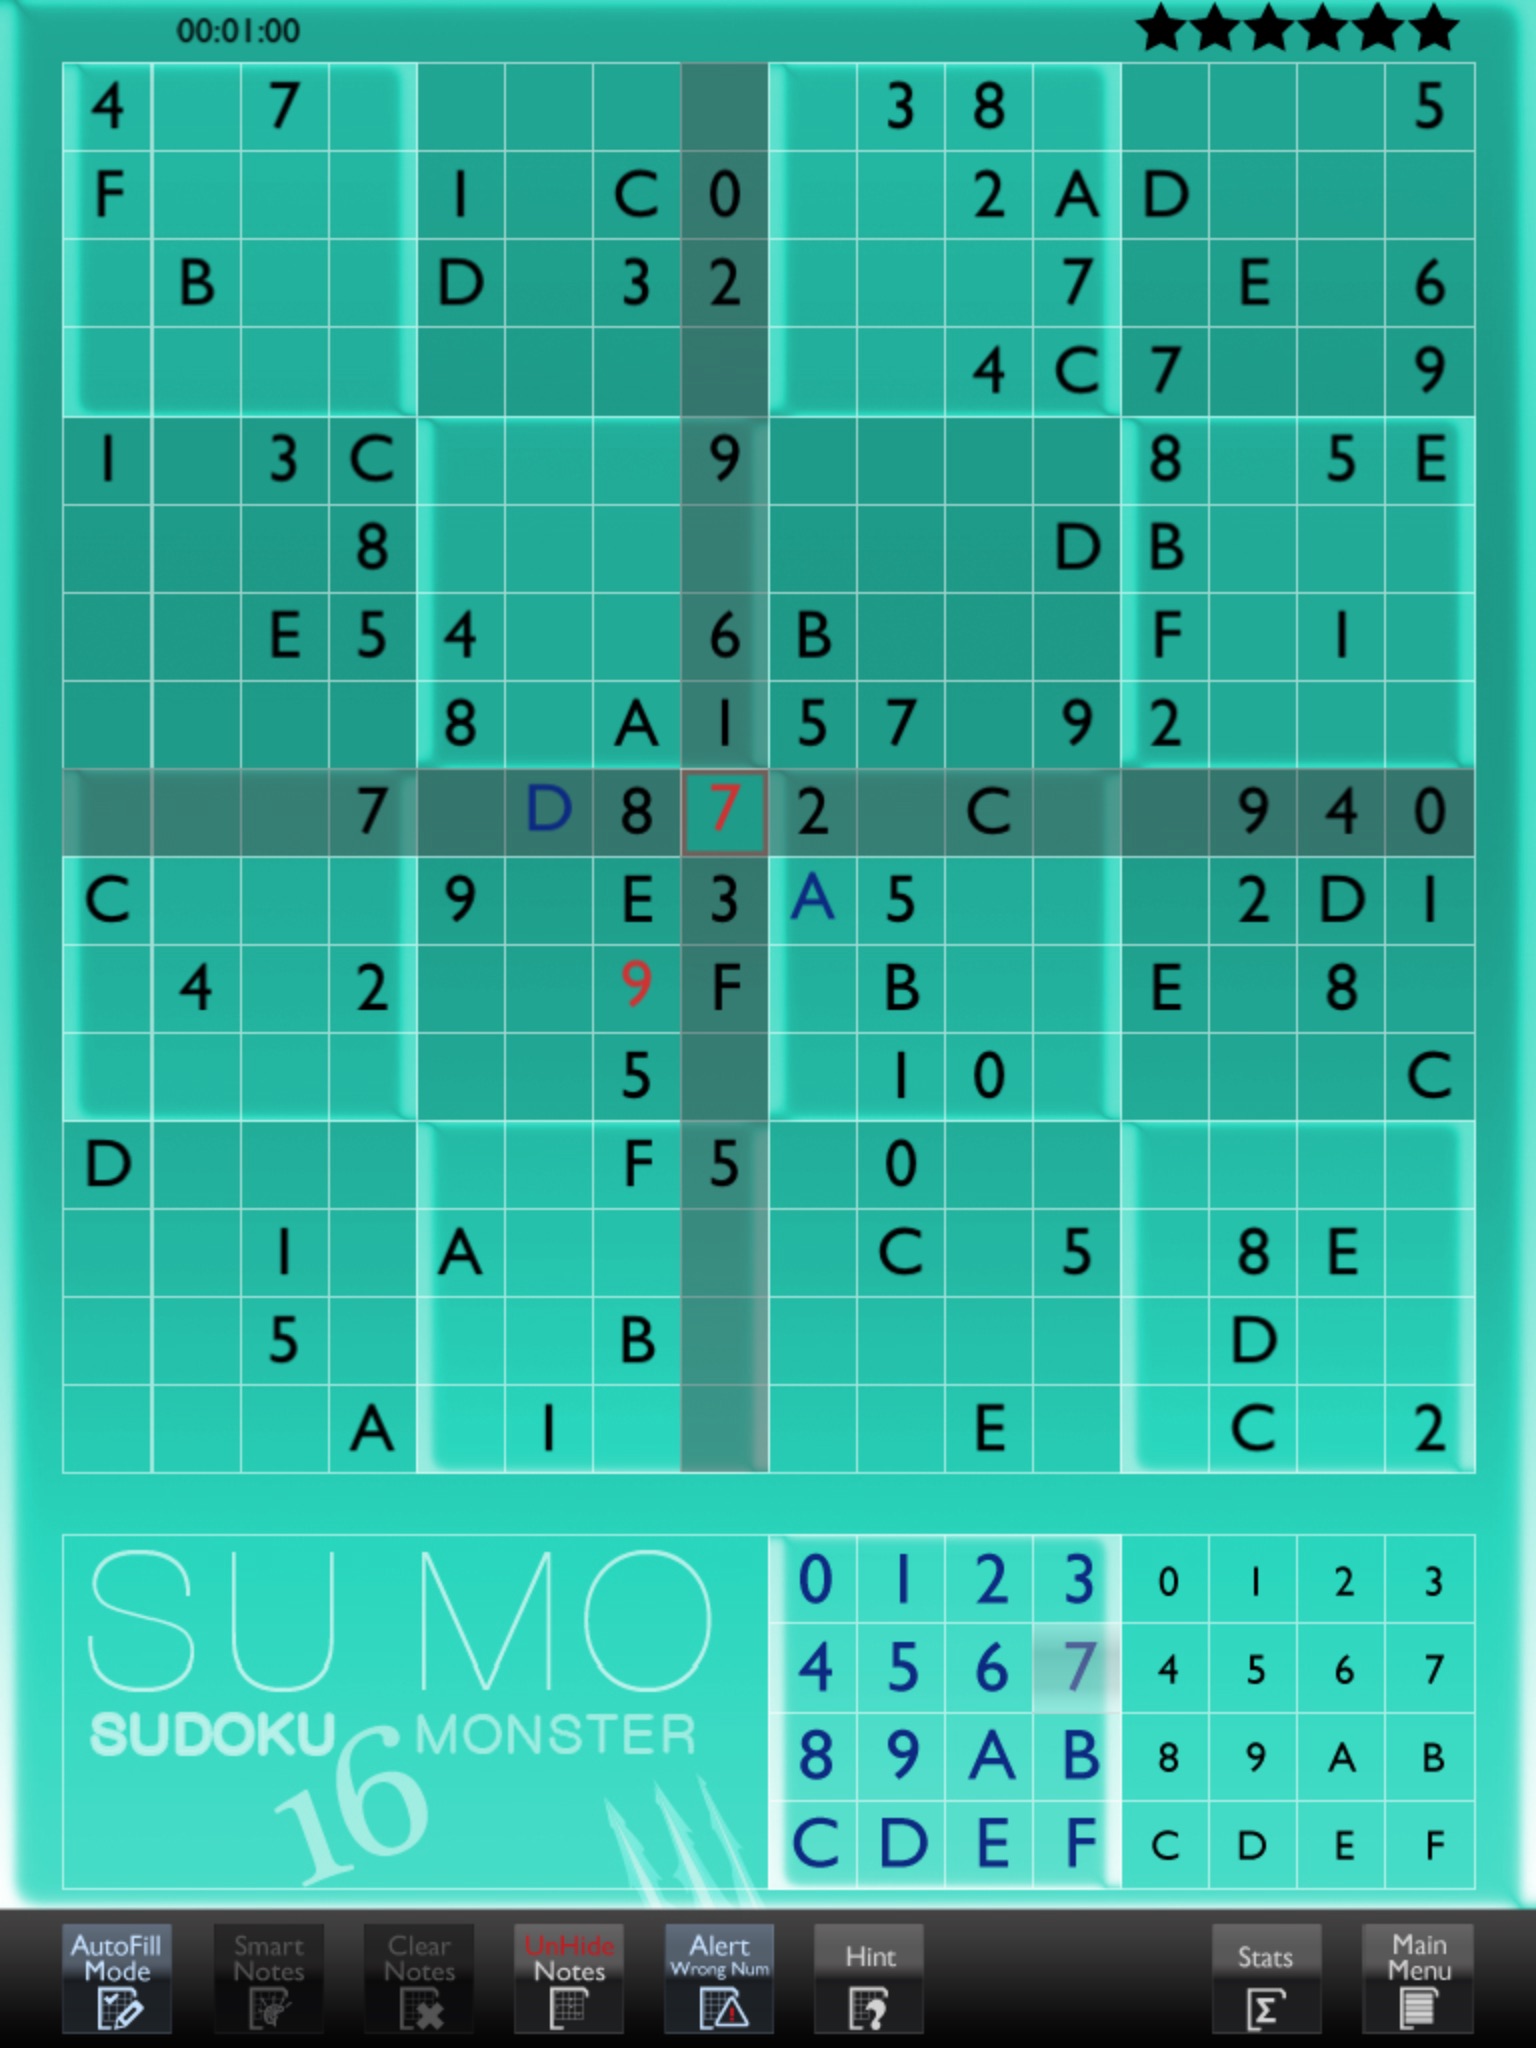 Sudoku 16 Monster screenshot 3